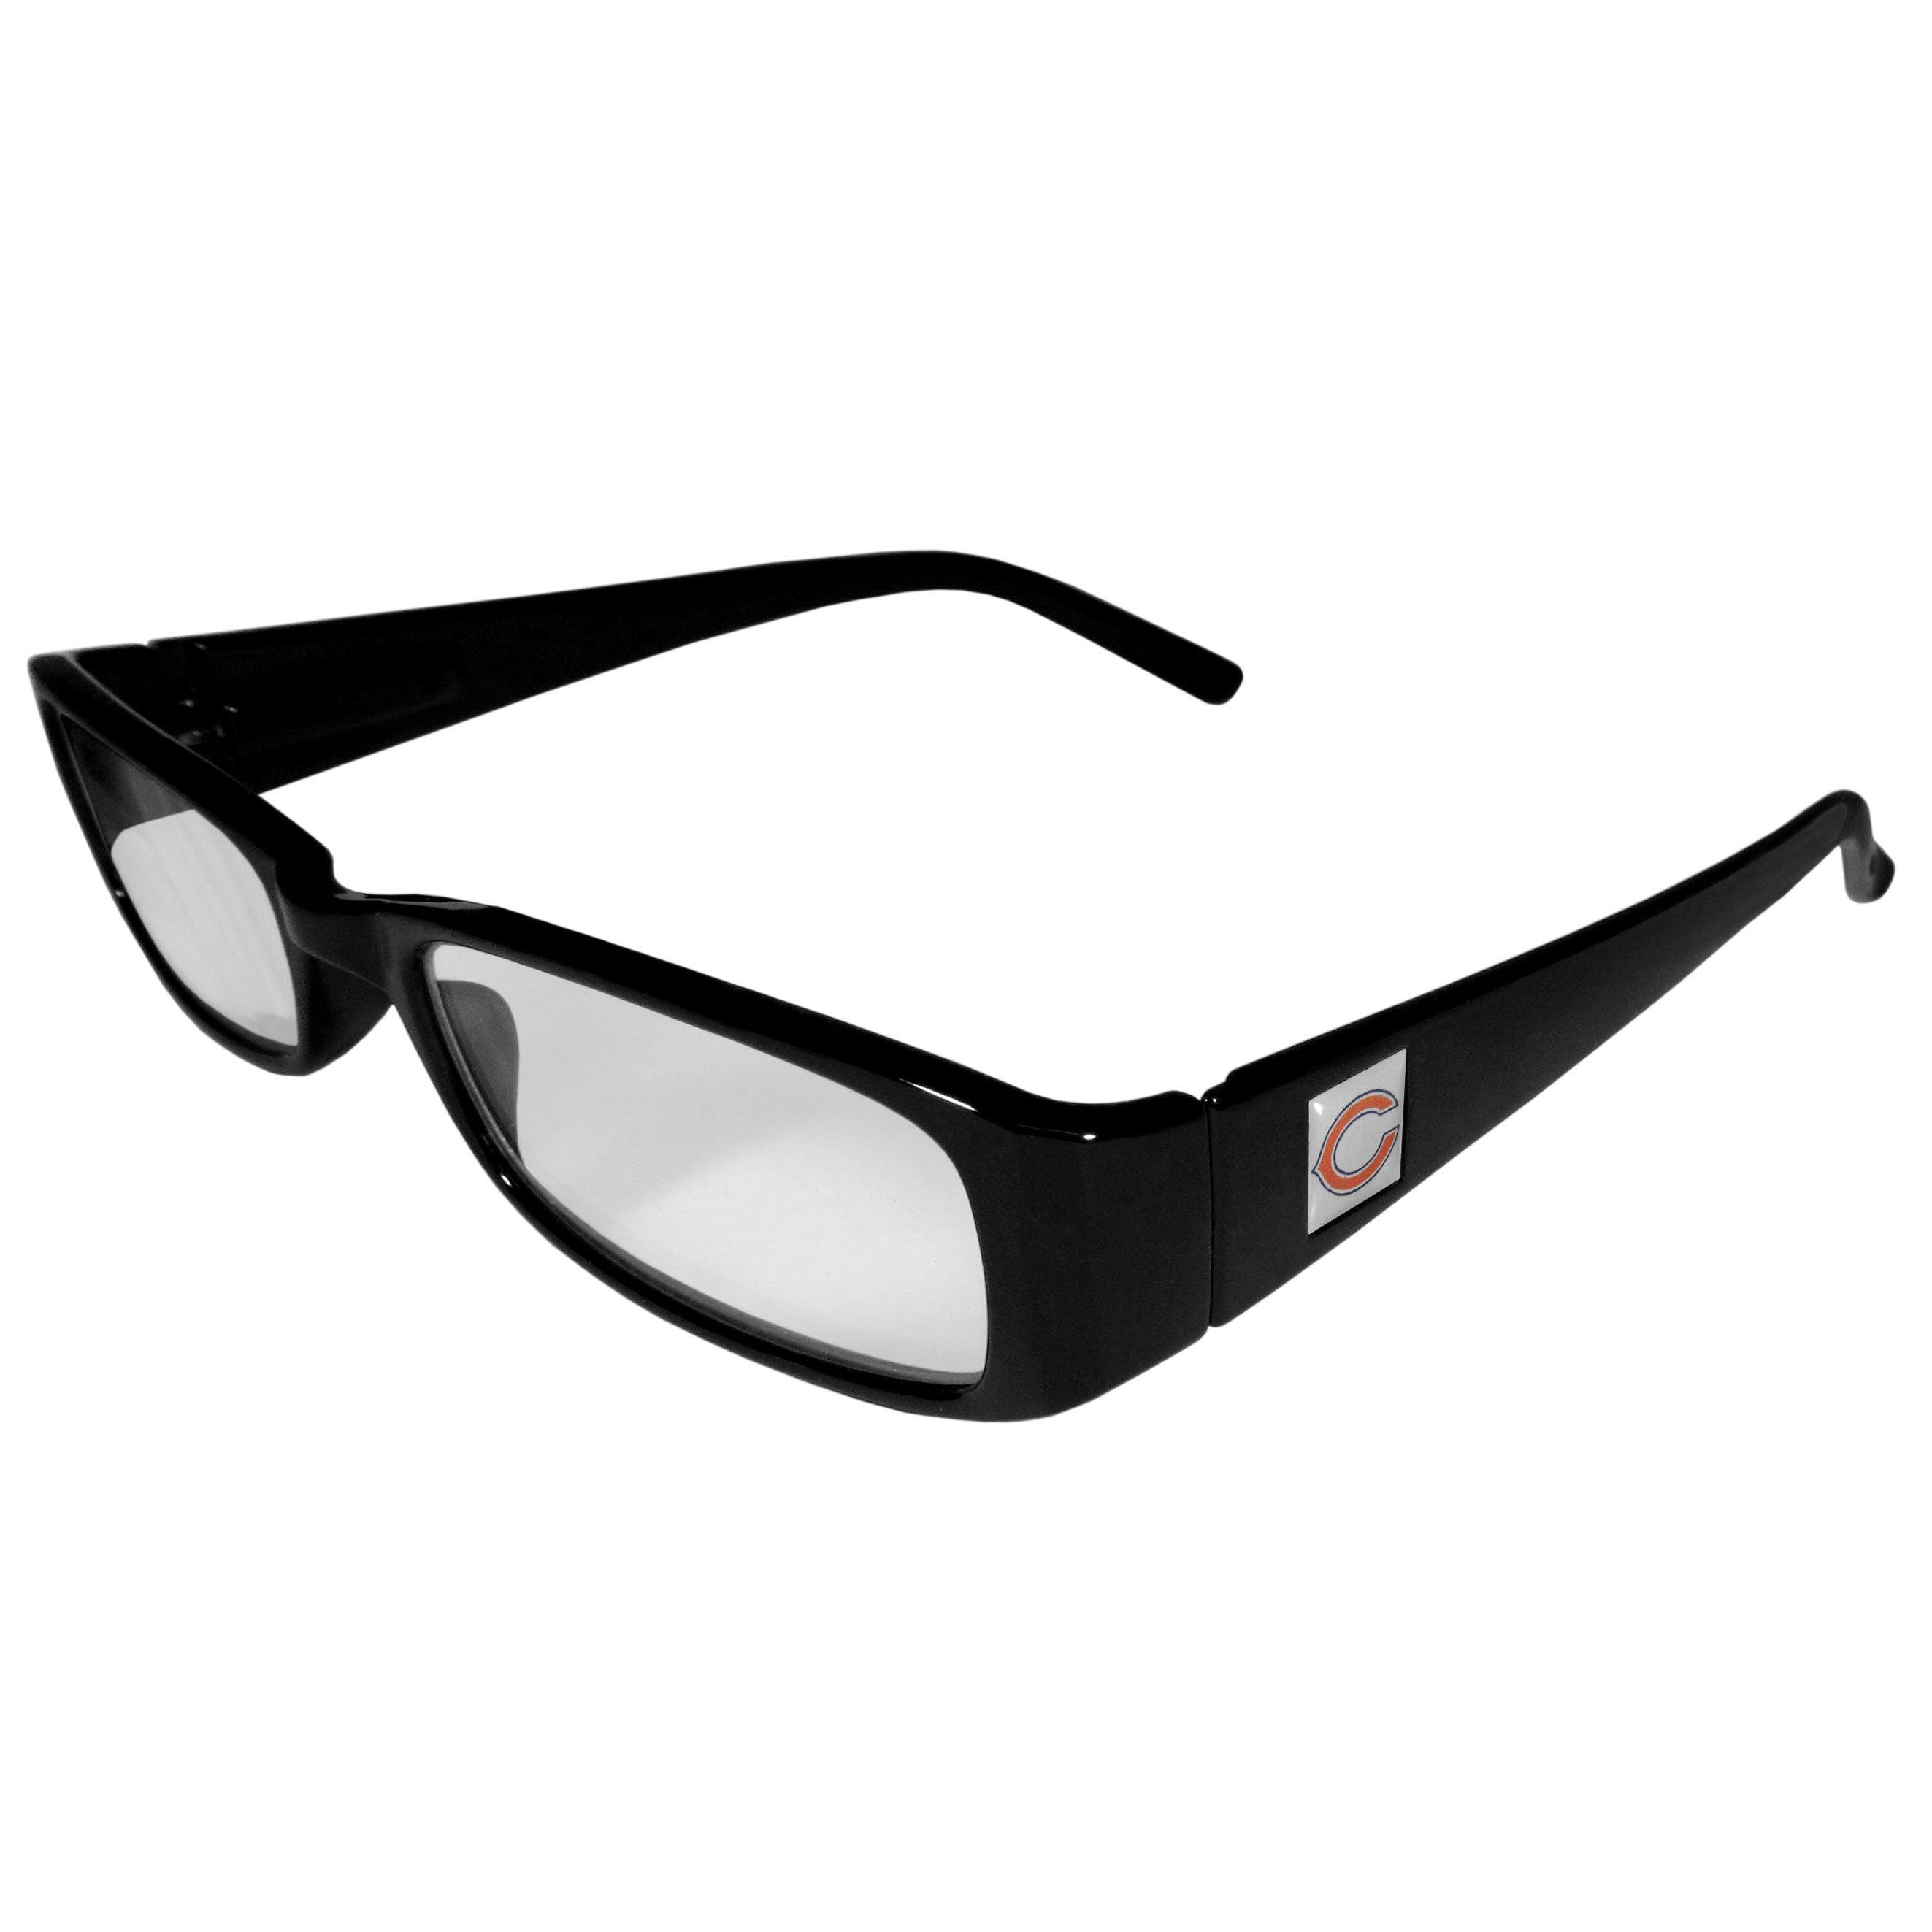 Chicago Bears Black Reading Glasses +1.25 - Flyclothing LLC